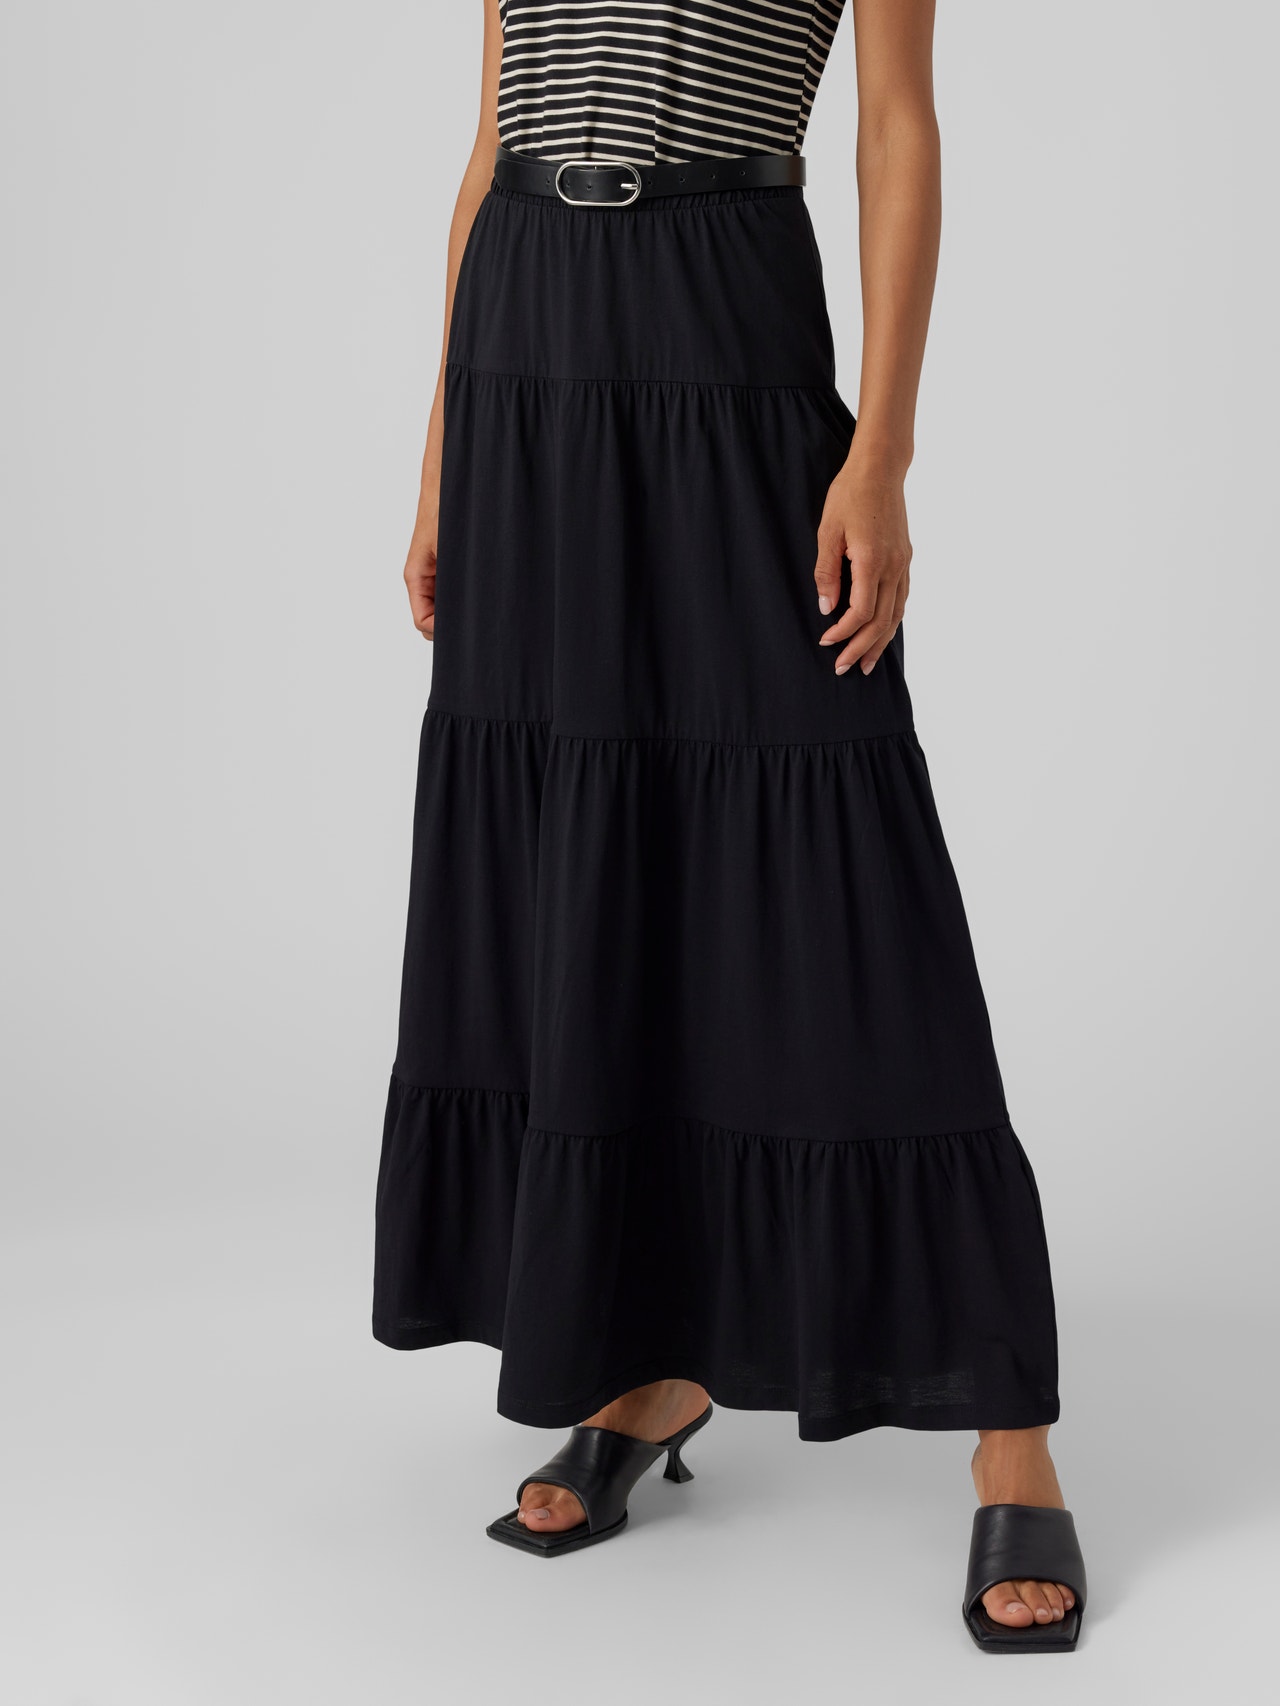 Radioaktiv saltet bifald Long skirt | Black | Vero Moda®